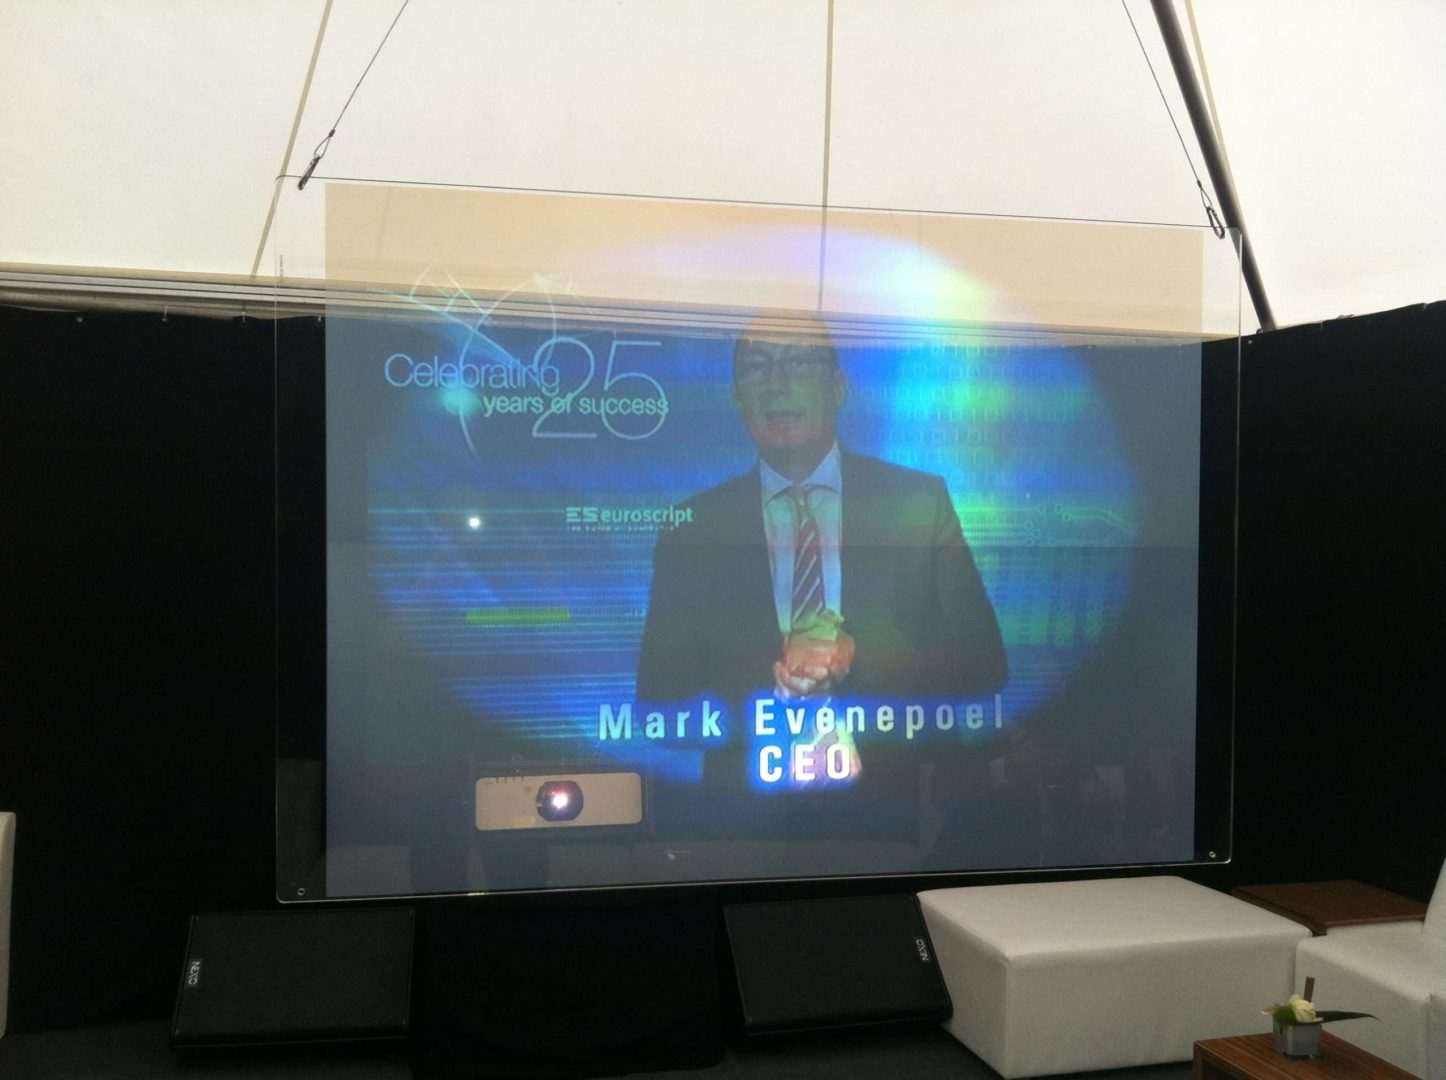 25-ans-euroscript-2009-conférence-écran-anniversaire-évenements